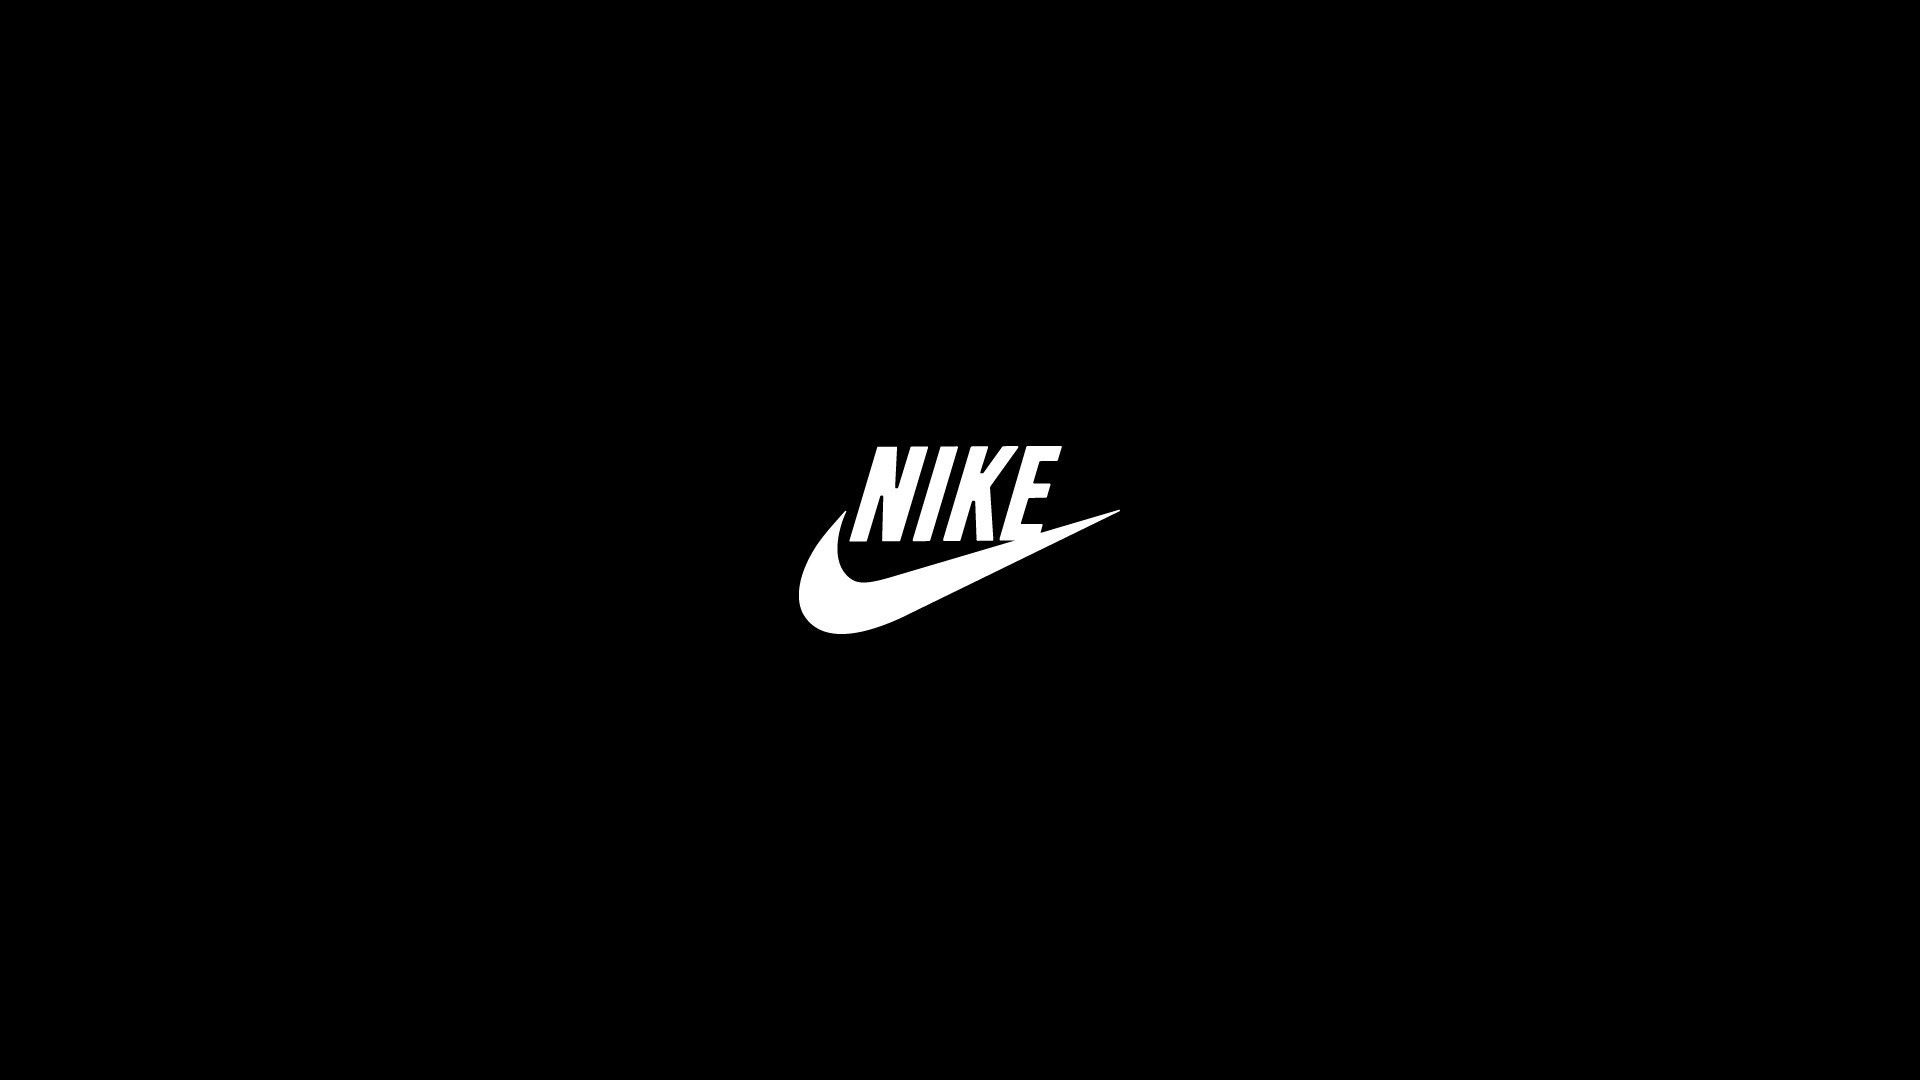 Các tấm hình nền Nike Air Logo Wallpapers chắc hẳn sẽ khiến bạn vô cùng phấn khích với biểu tượng hiện đại và phong cách của Nike Air. Chúng tương thích hoàn hảo với mọi kiểu áo quần, giúp bạn sẵn sàng cho mọi hoạt động đầy năng lượng.